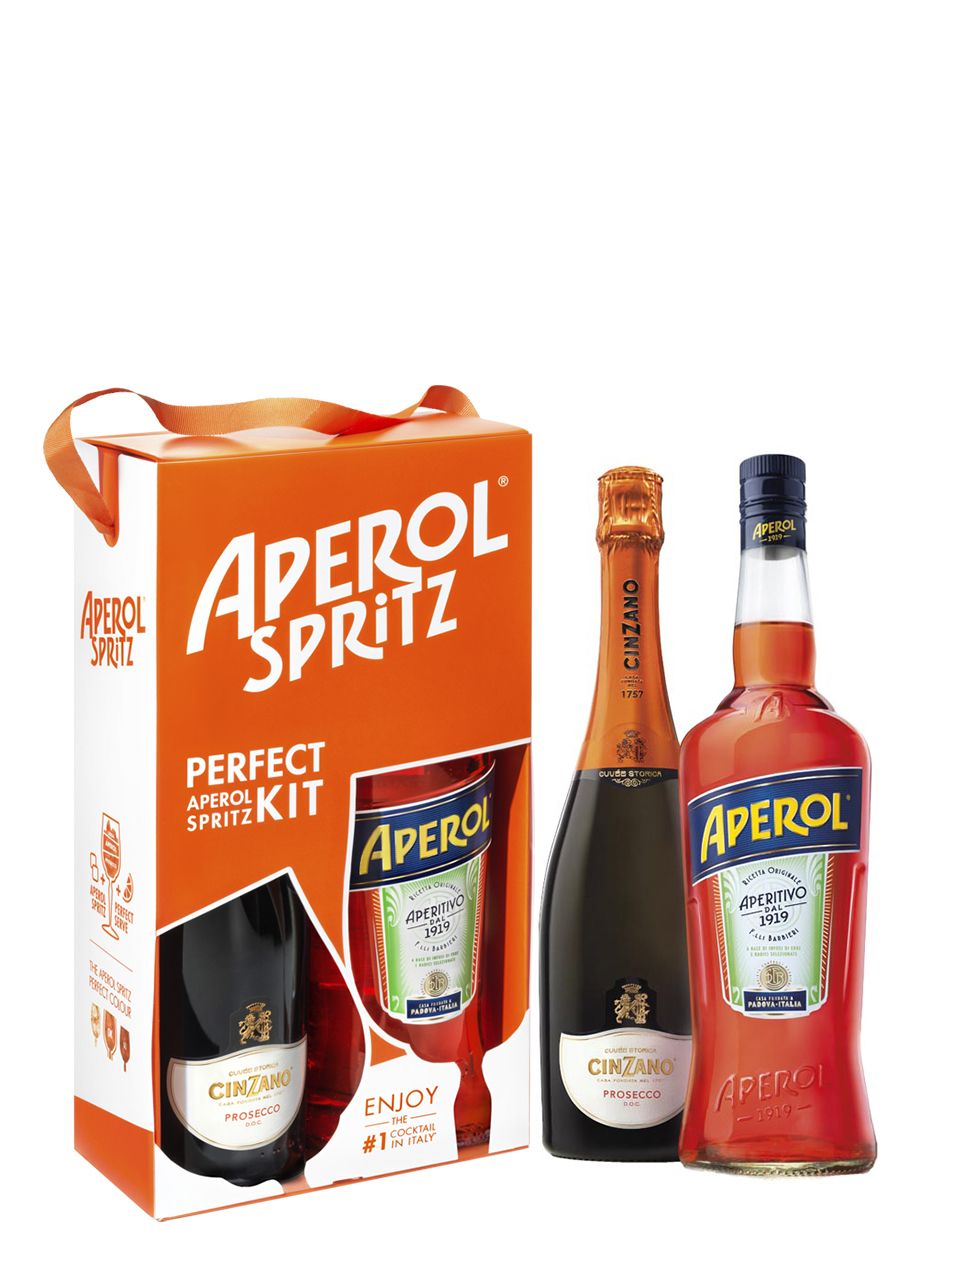 Spritz 11% (contine: 1 L Aperol 11% + 0.75 L Cinzano Prosecco 11%)